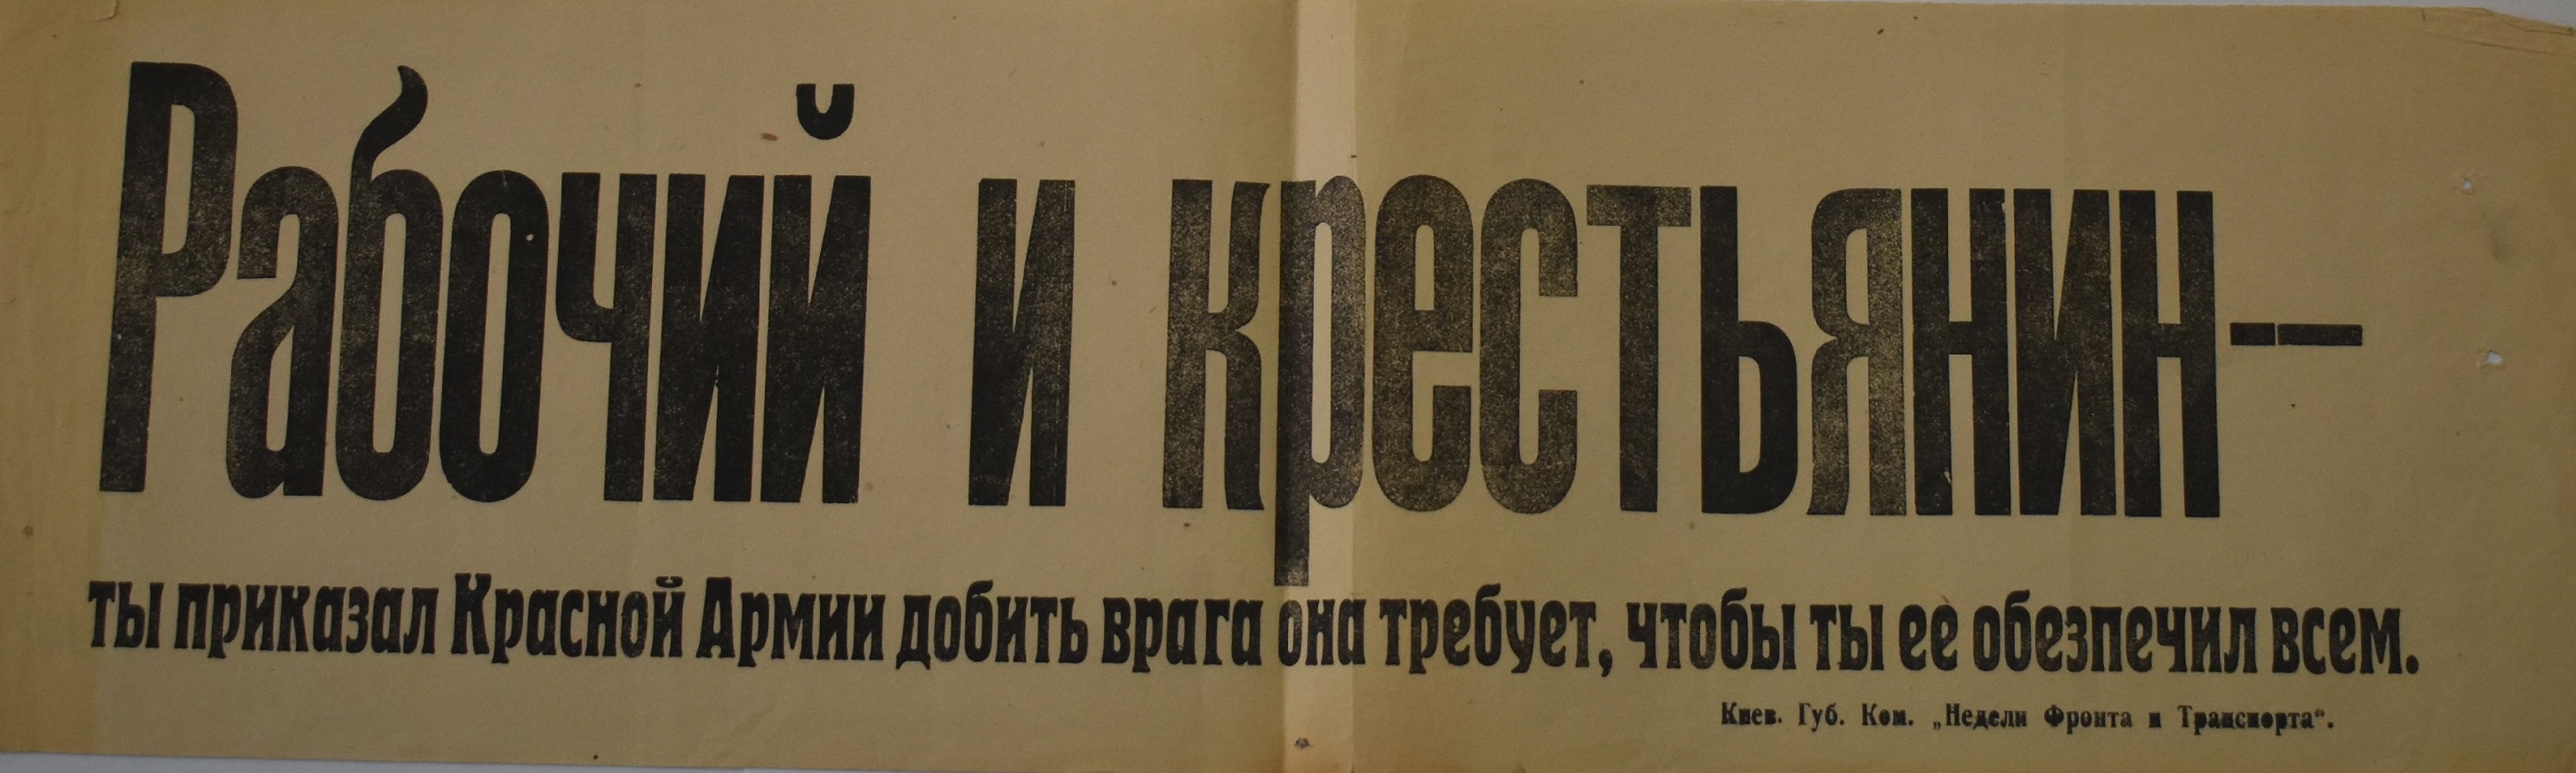 Листівка-лозунг "Рабочий и крестьянин - ты приказал Красной Армии добить врага она требует, чтобы ты ее обеспечил всем"